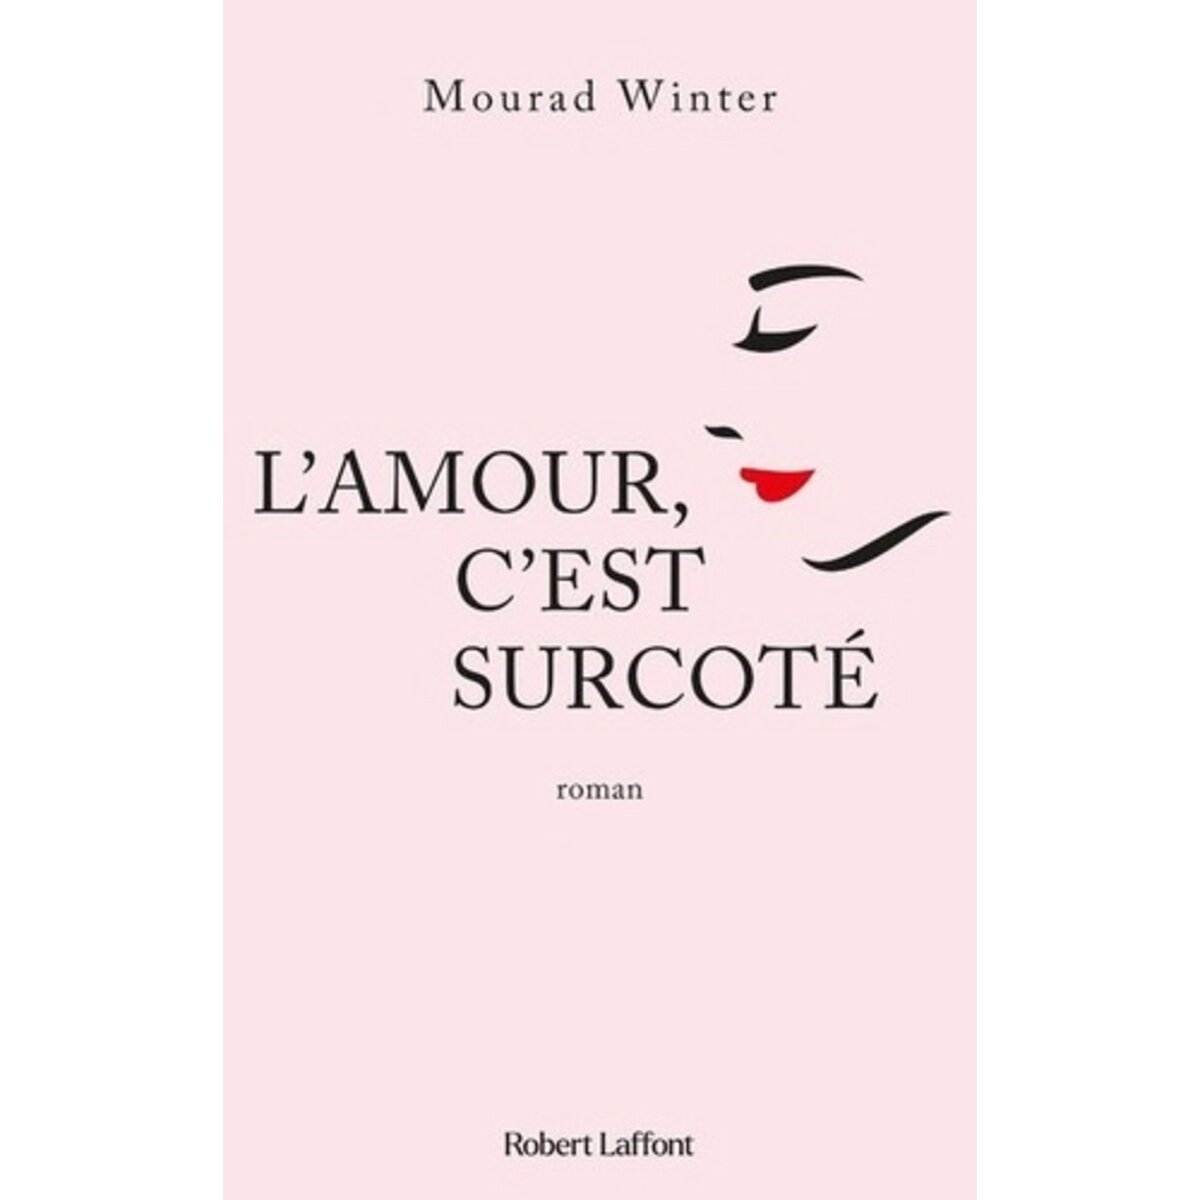  L'AMOUR, C'EST SURCOTE, Winter Mourad